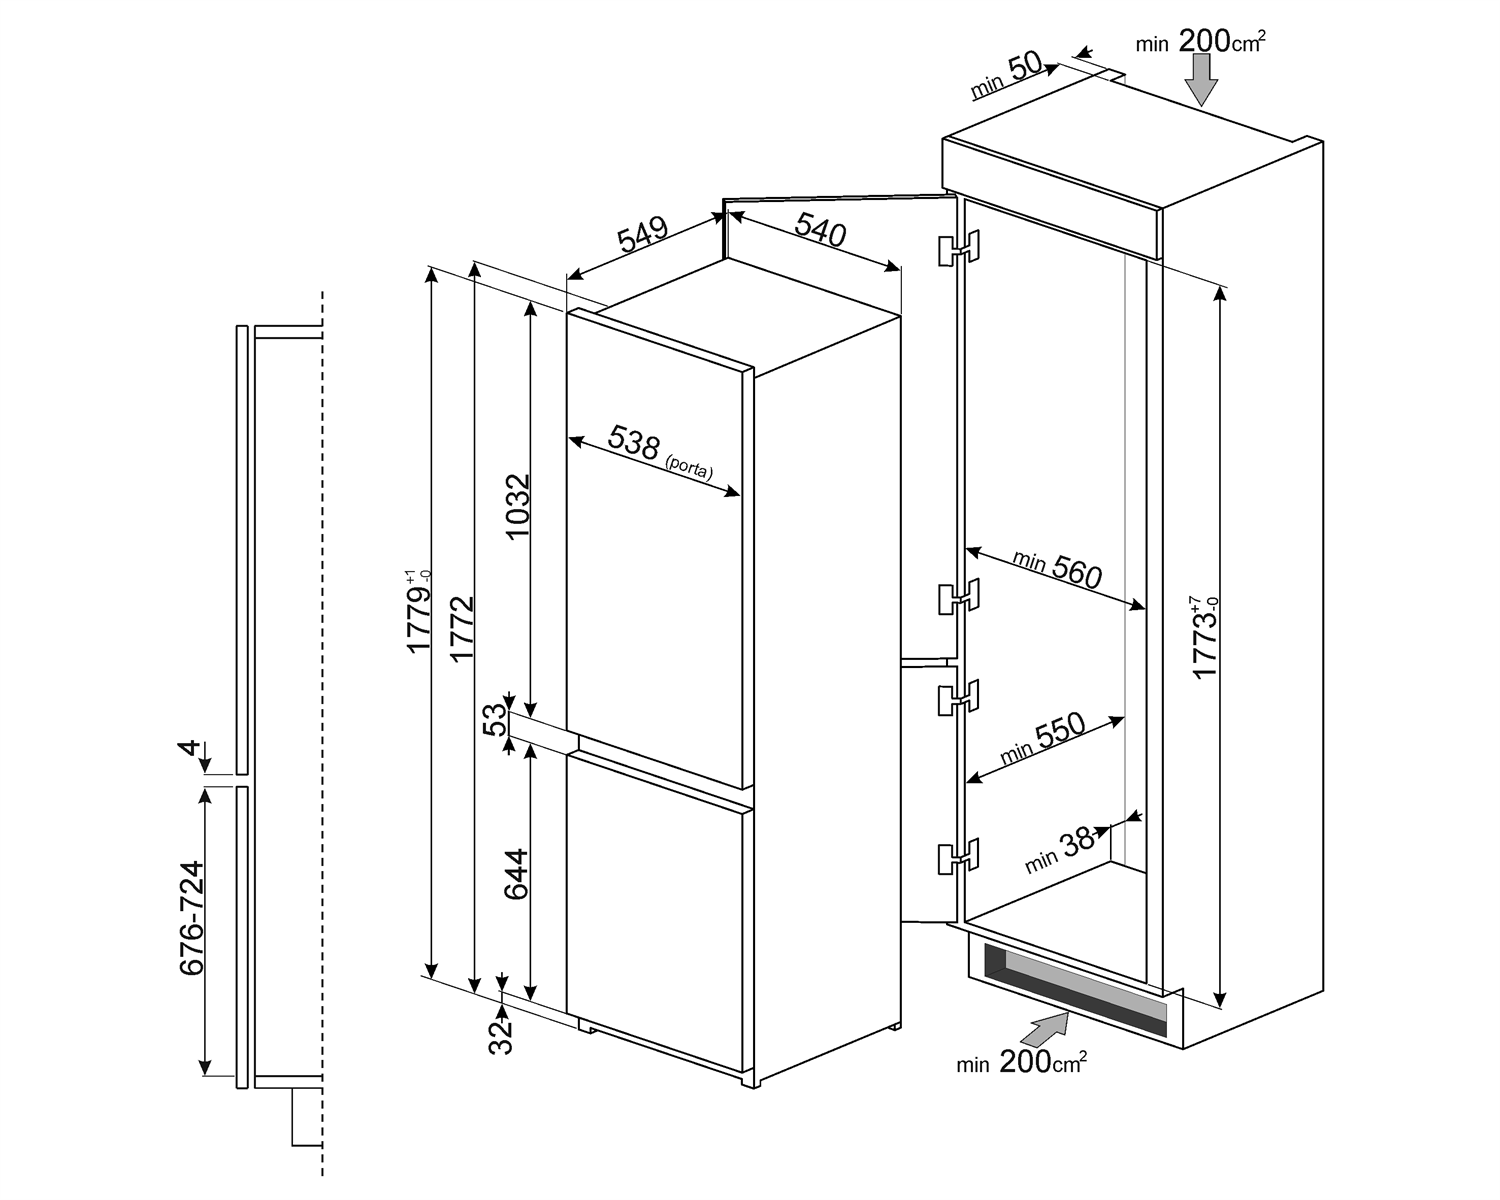 Maattekening SMEG koelkast inbouw C7280FP1